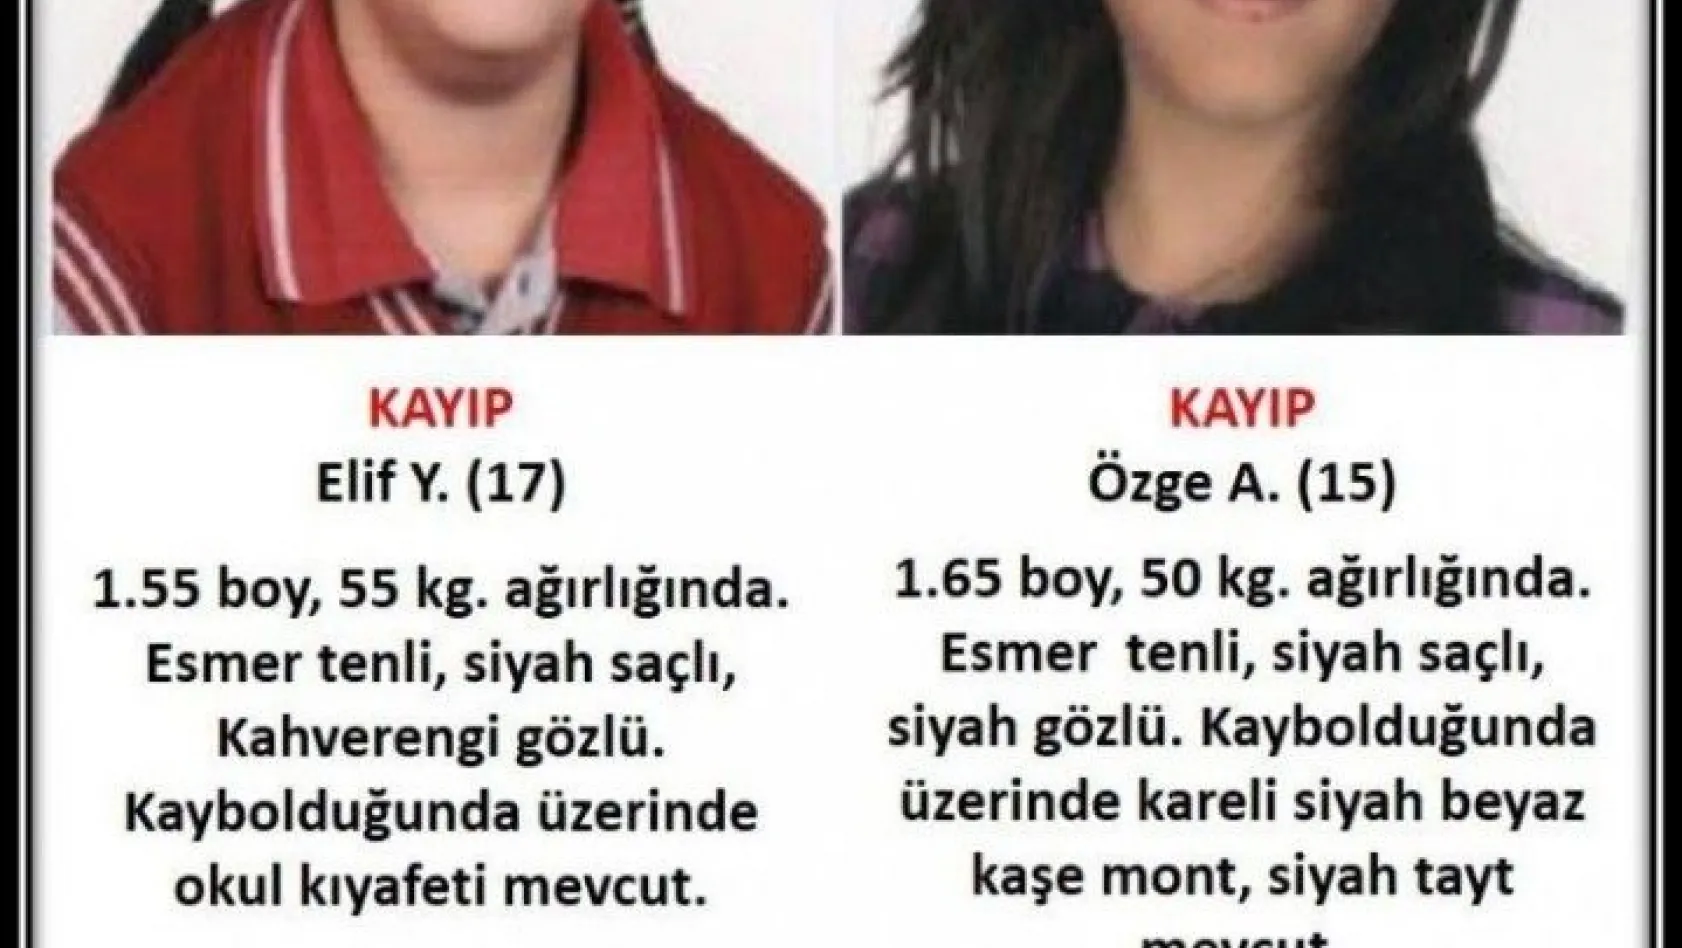 Erzurum'da 2 kızdan haber alınamıyor
